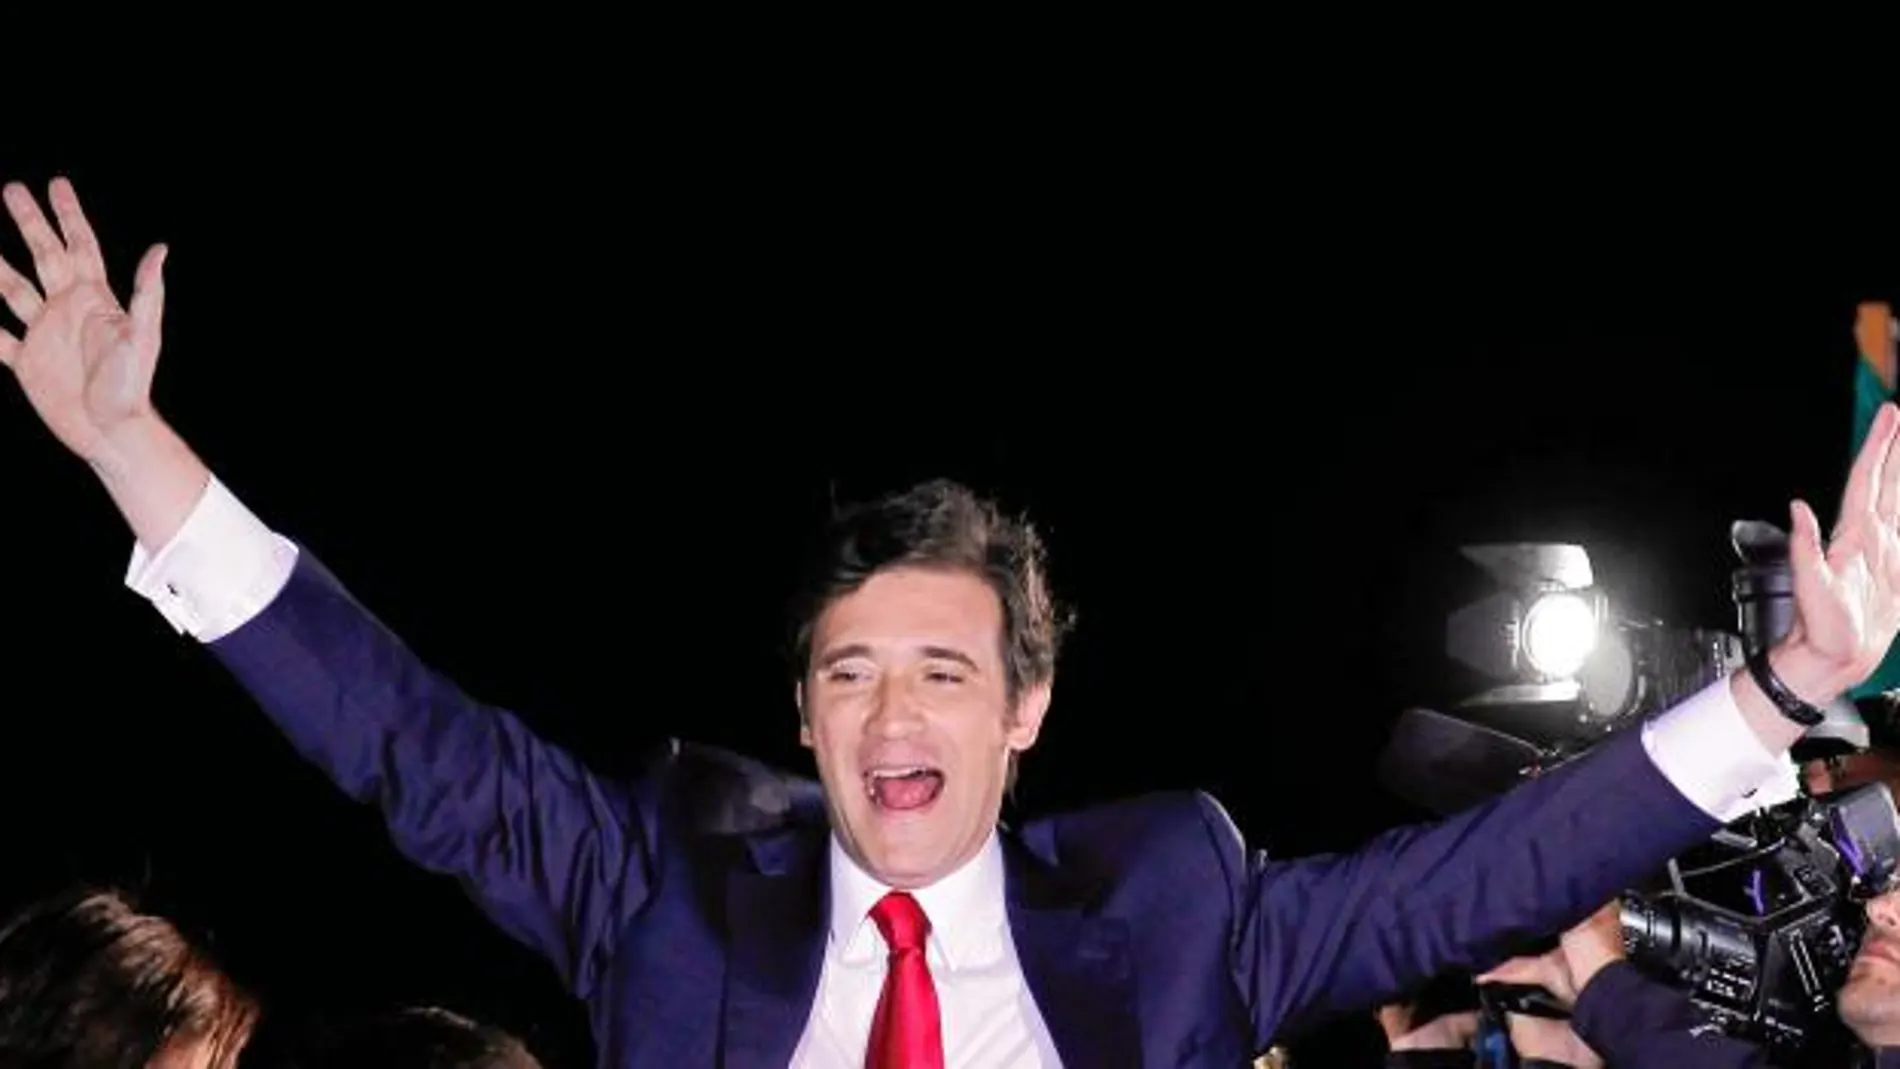 El candidato del PSD, Pedro Passos Coelho, celebra su victoria en las elecciones legislativas en Portugal, el domingo por la noche